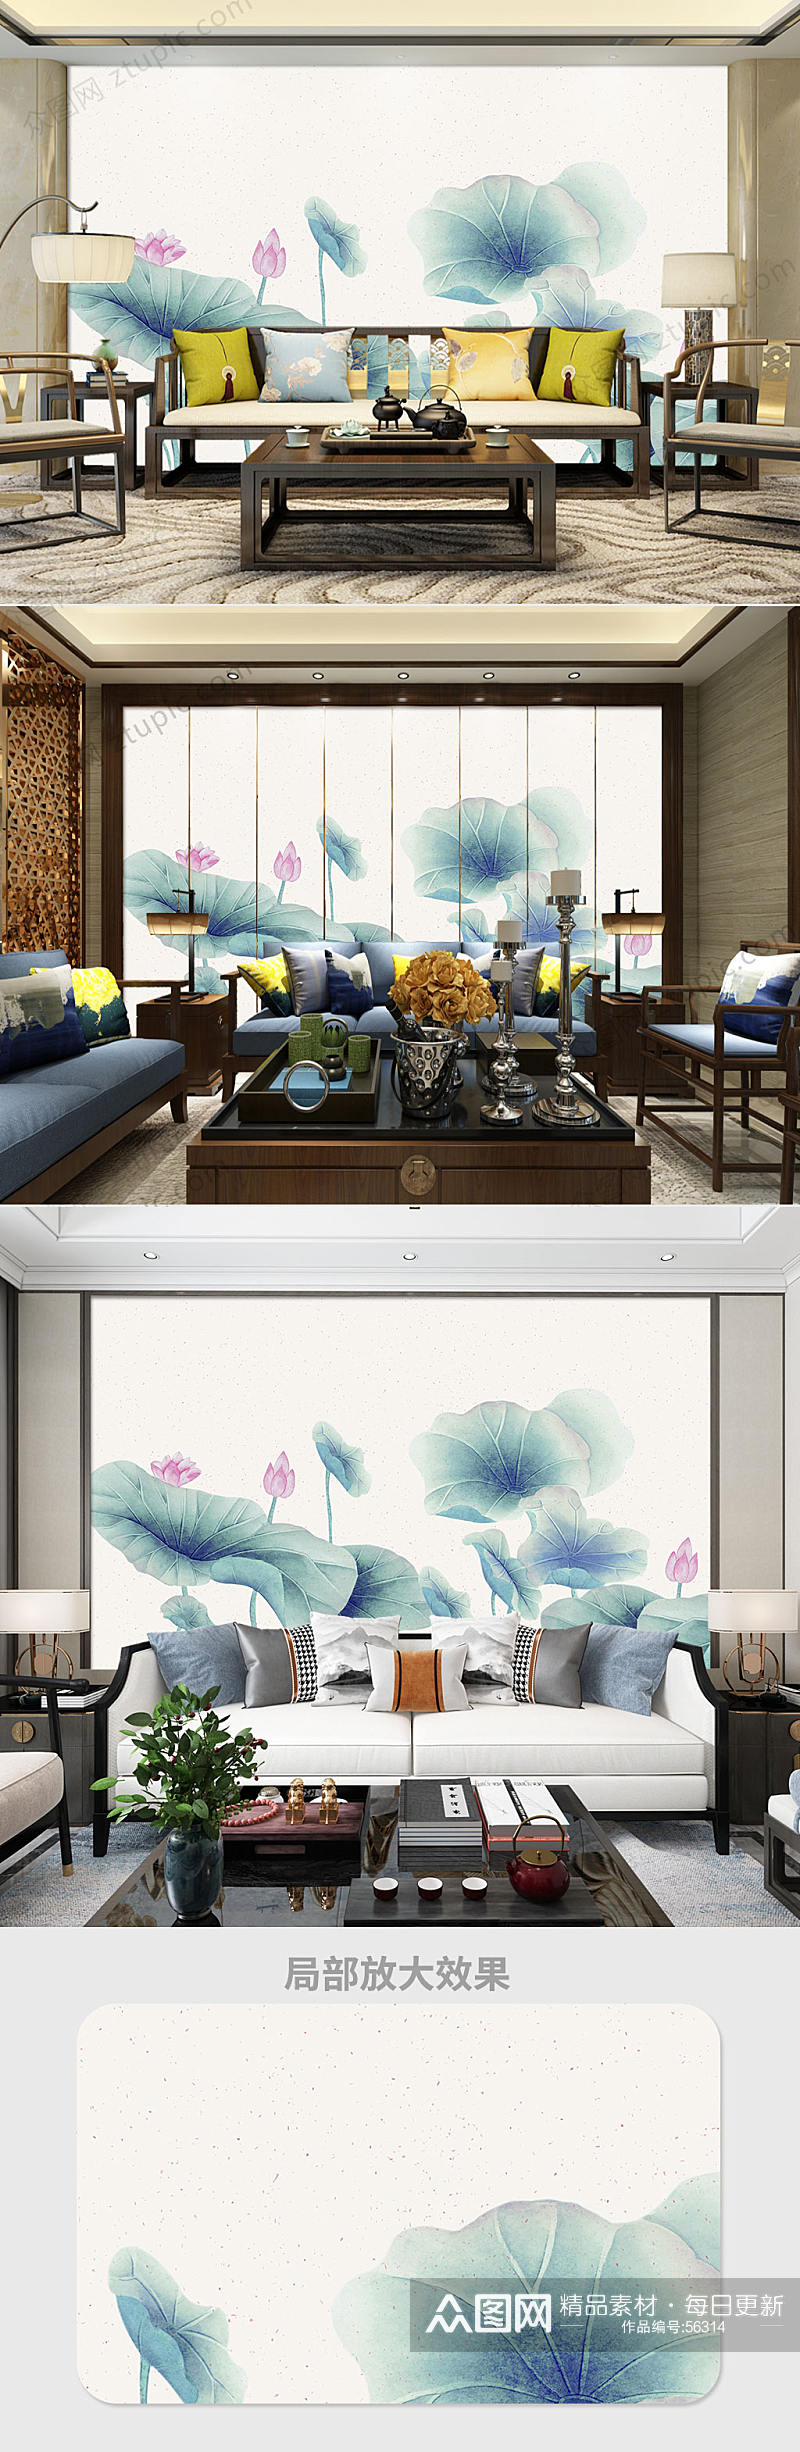 中式手绘荷花电视背景墙素材